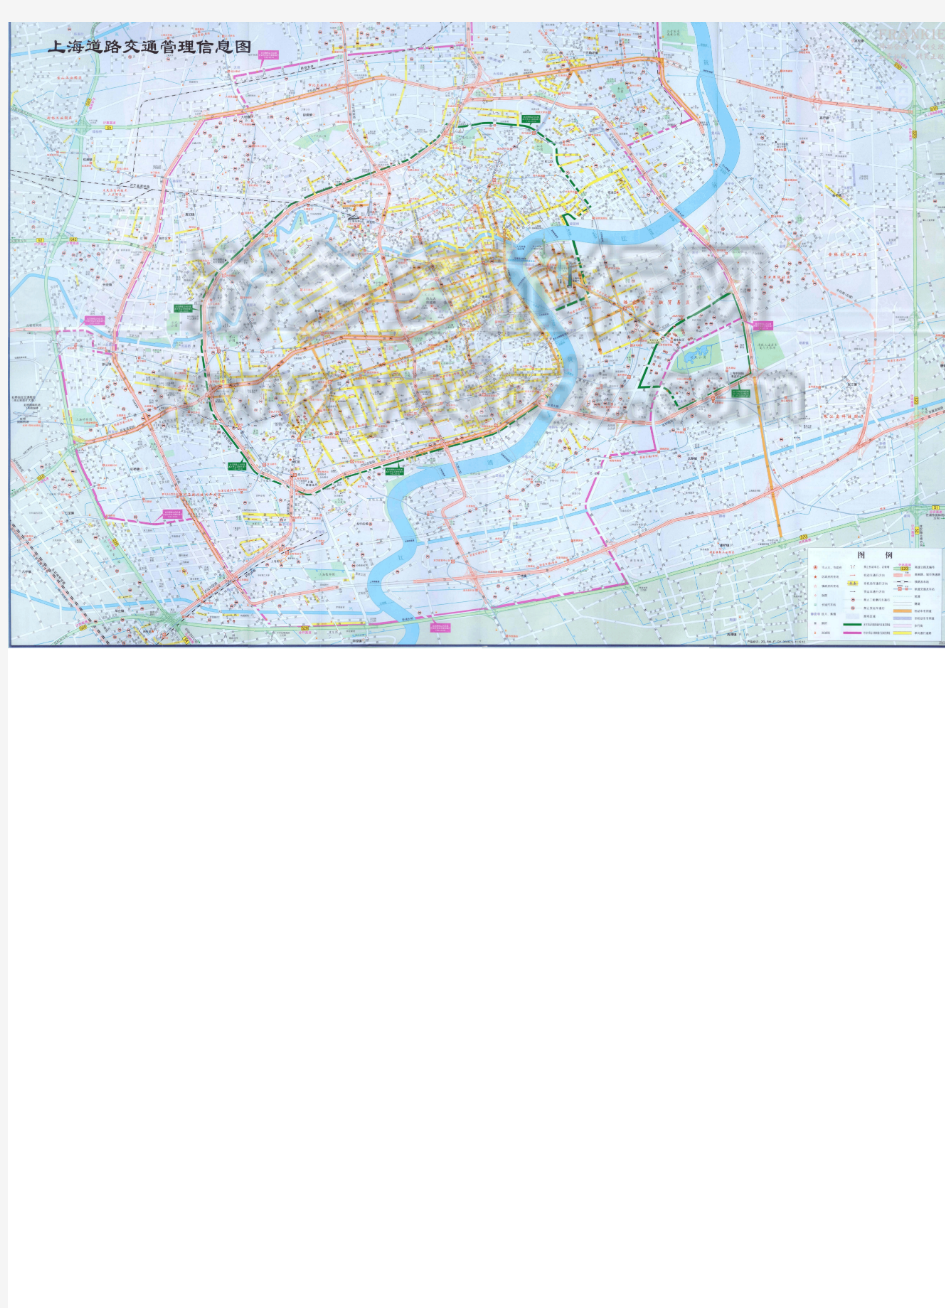 上海市交通地图(2012版)